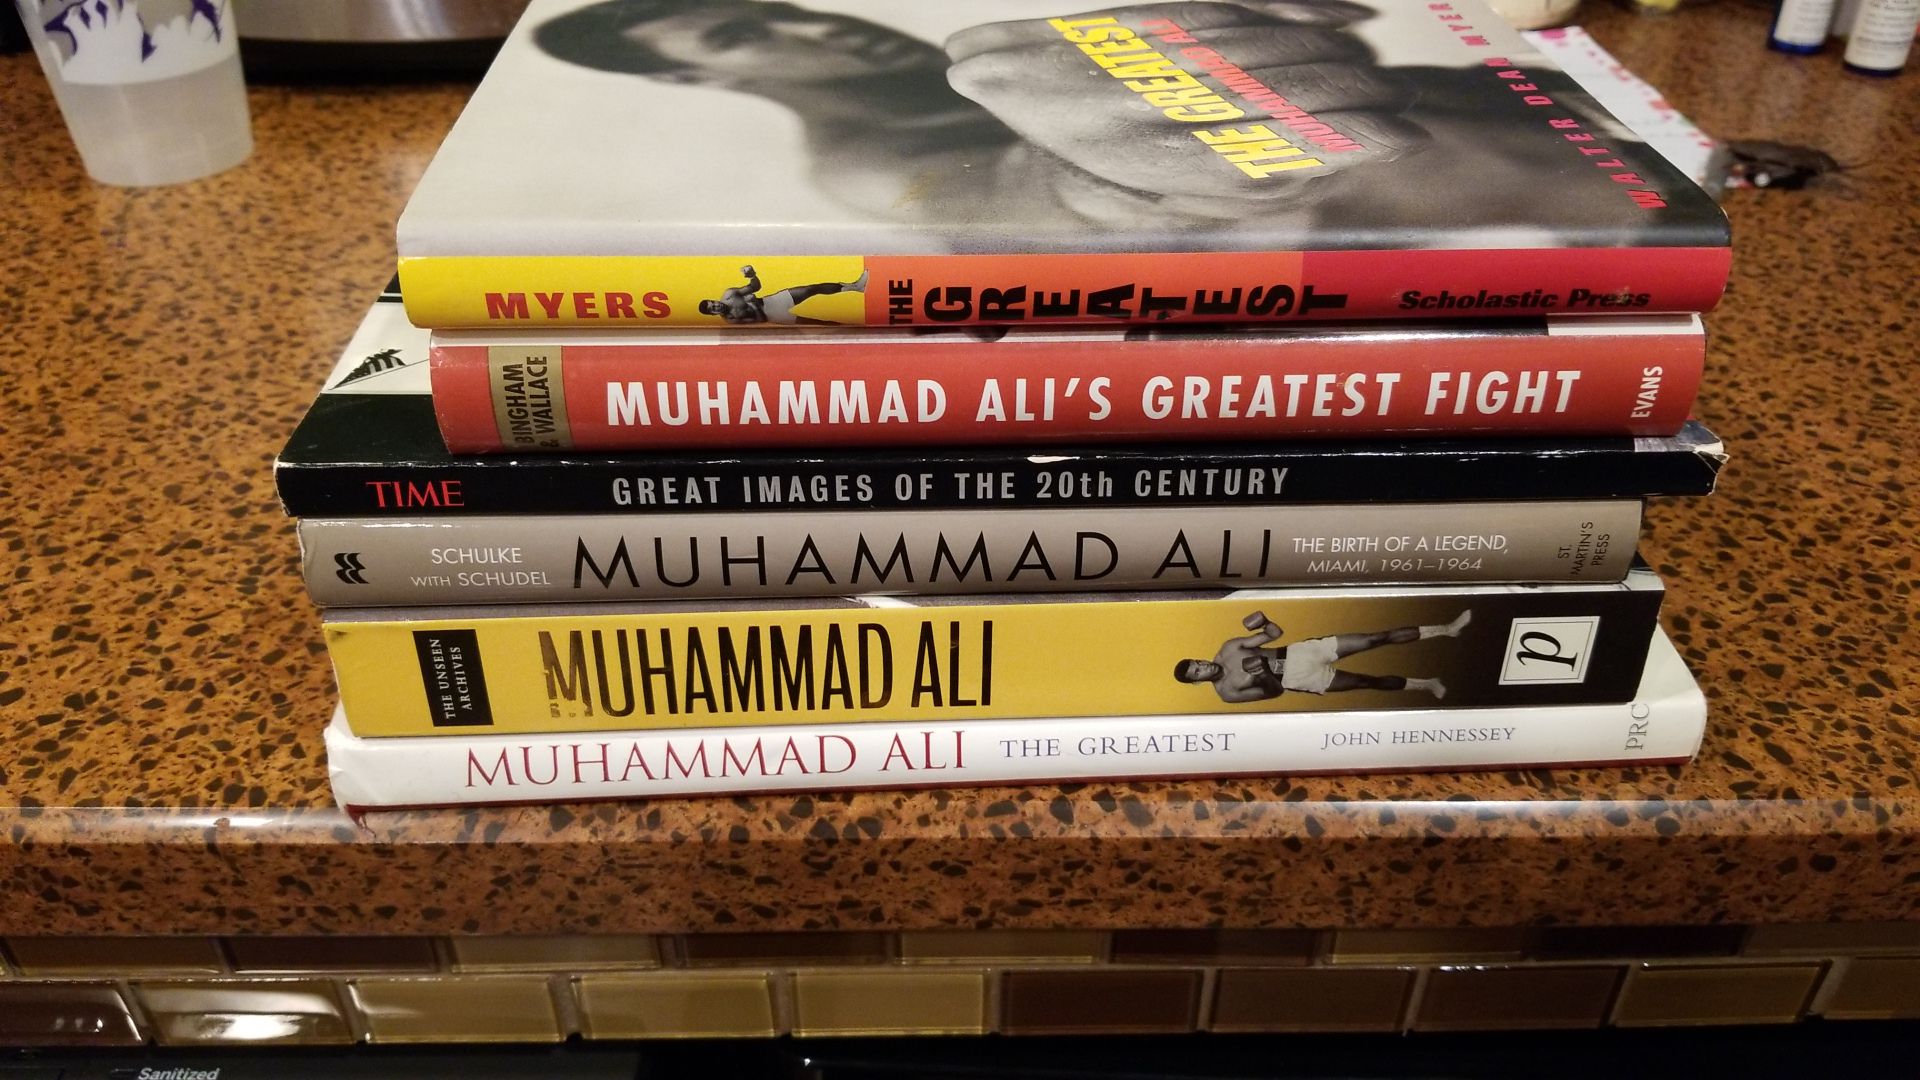 Muhammad Ali coffee table books